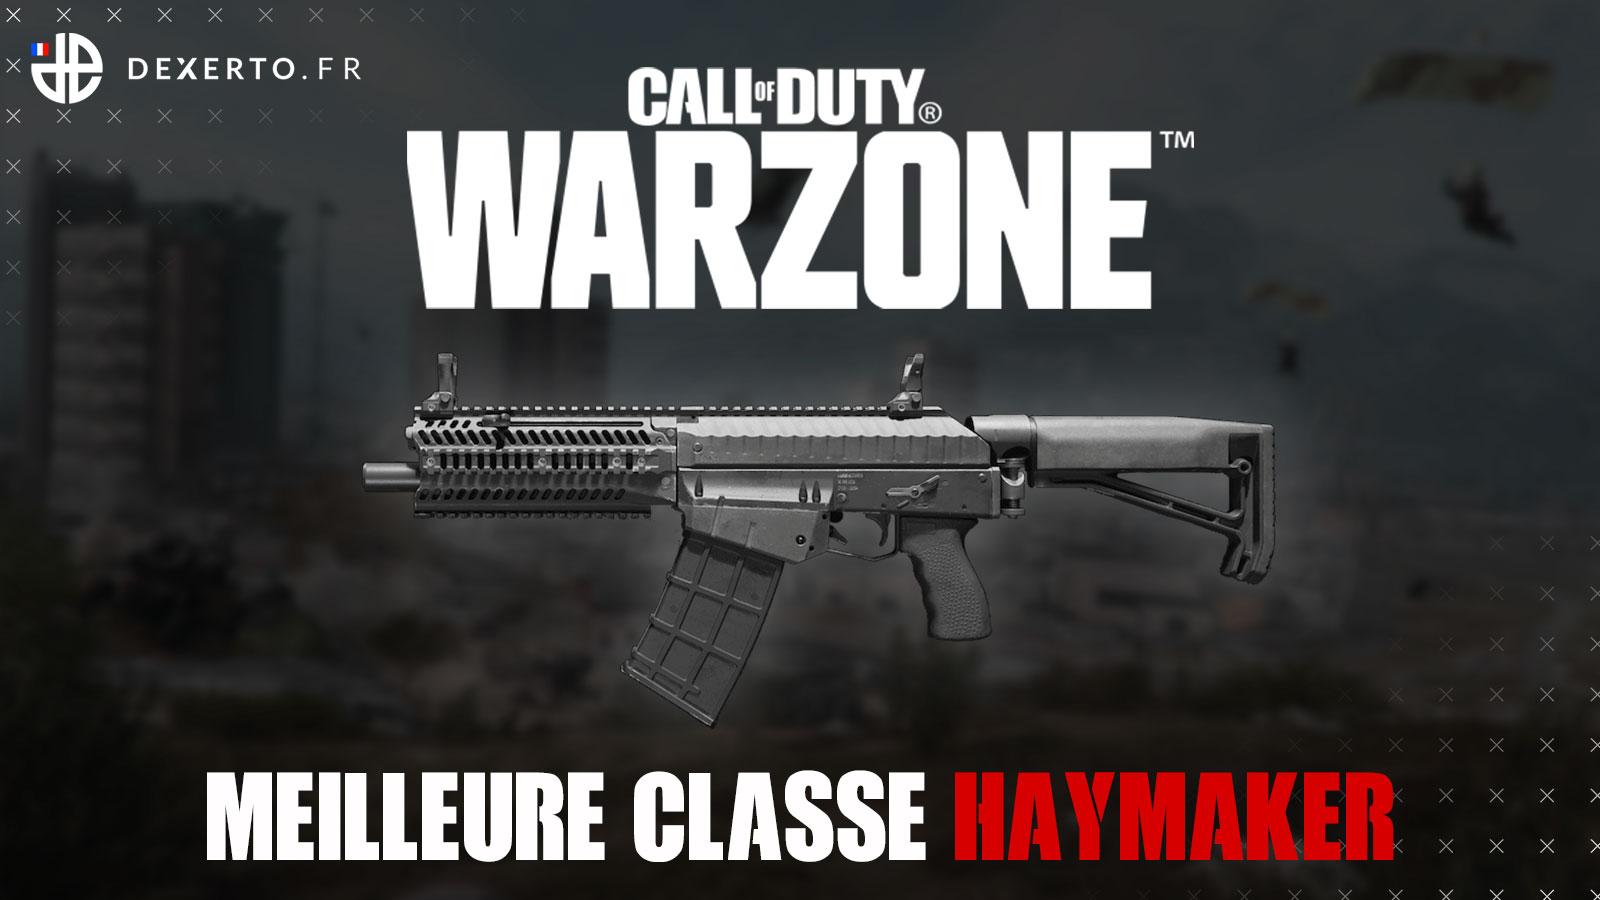 Warzone Haymaker classe